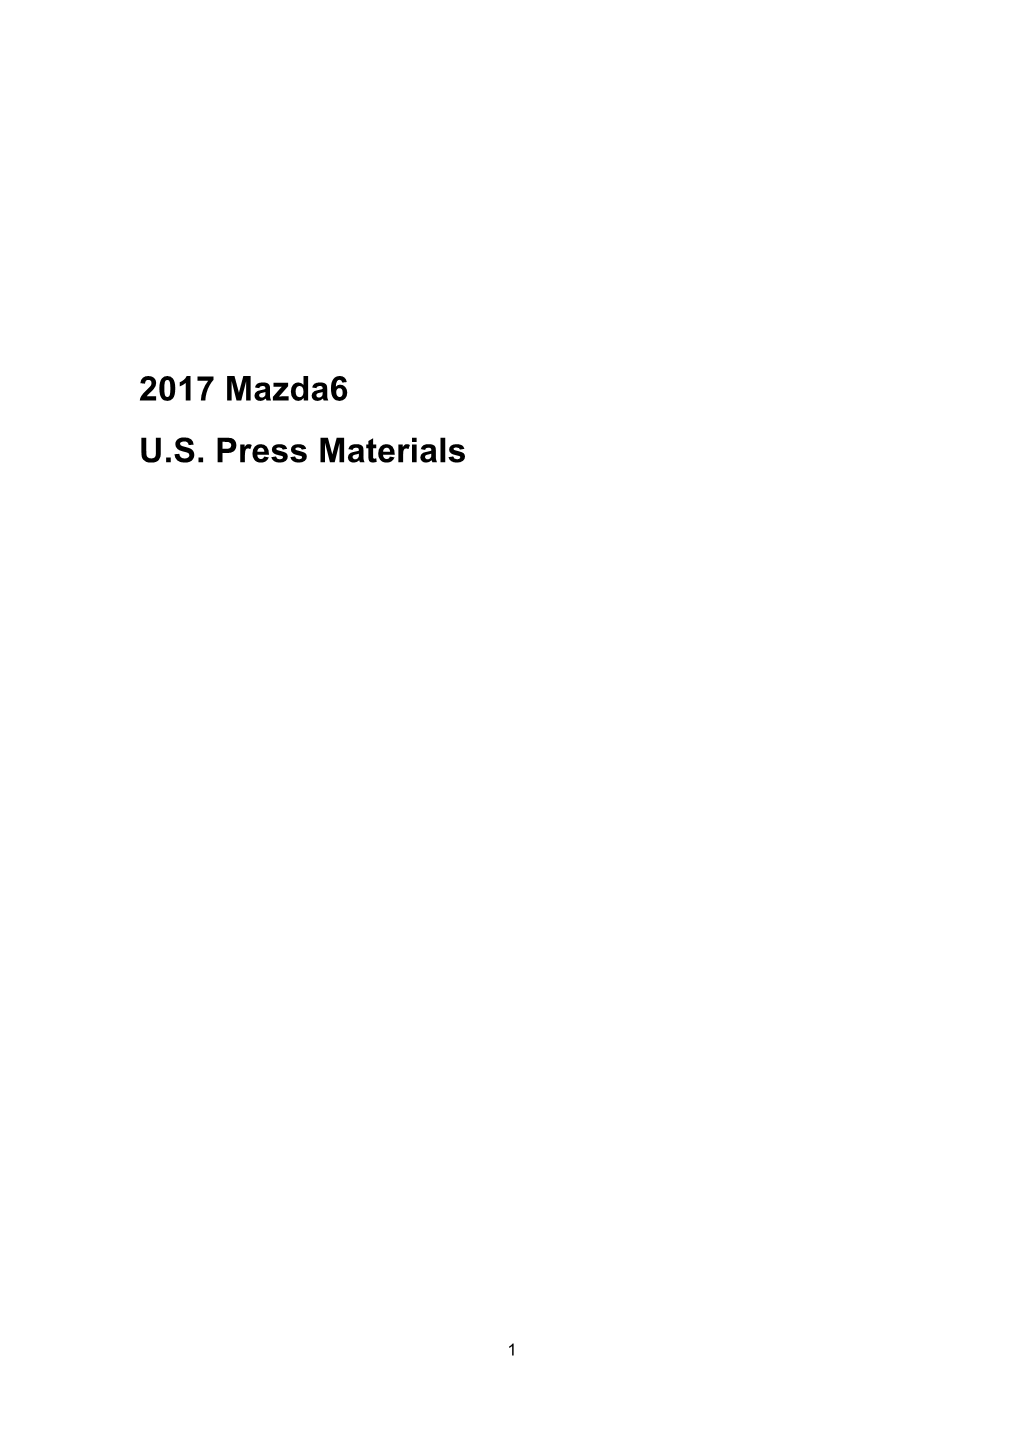 2017 Mazda6 US Press Materials